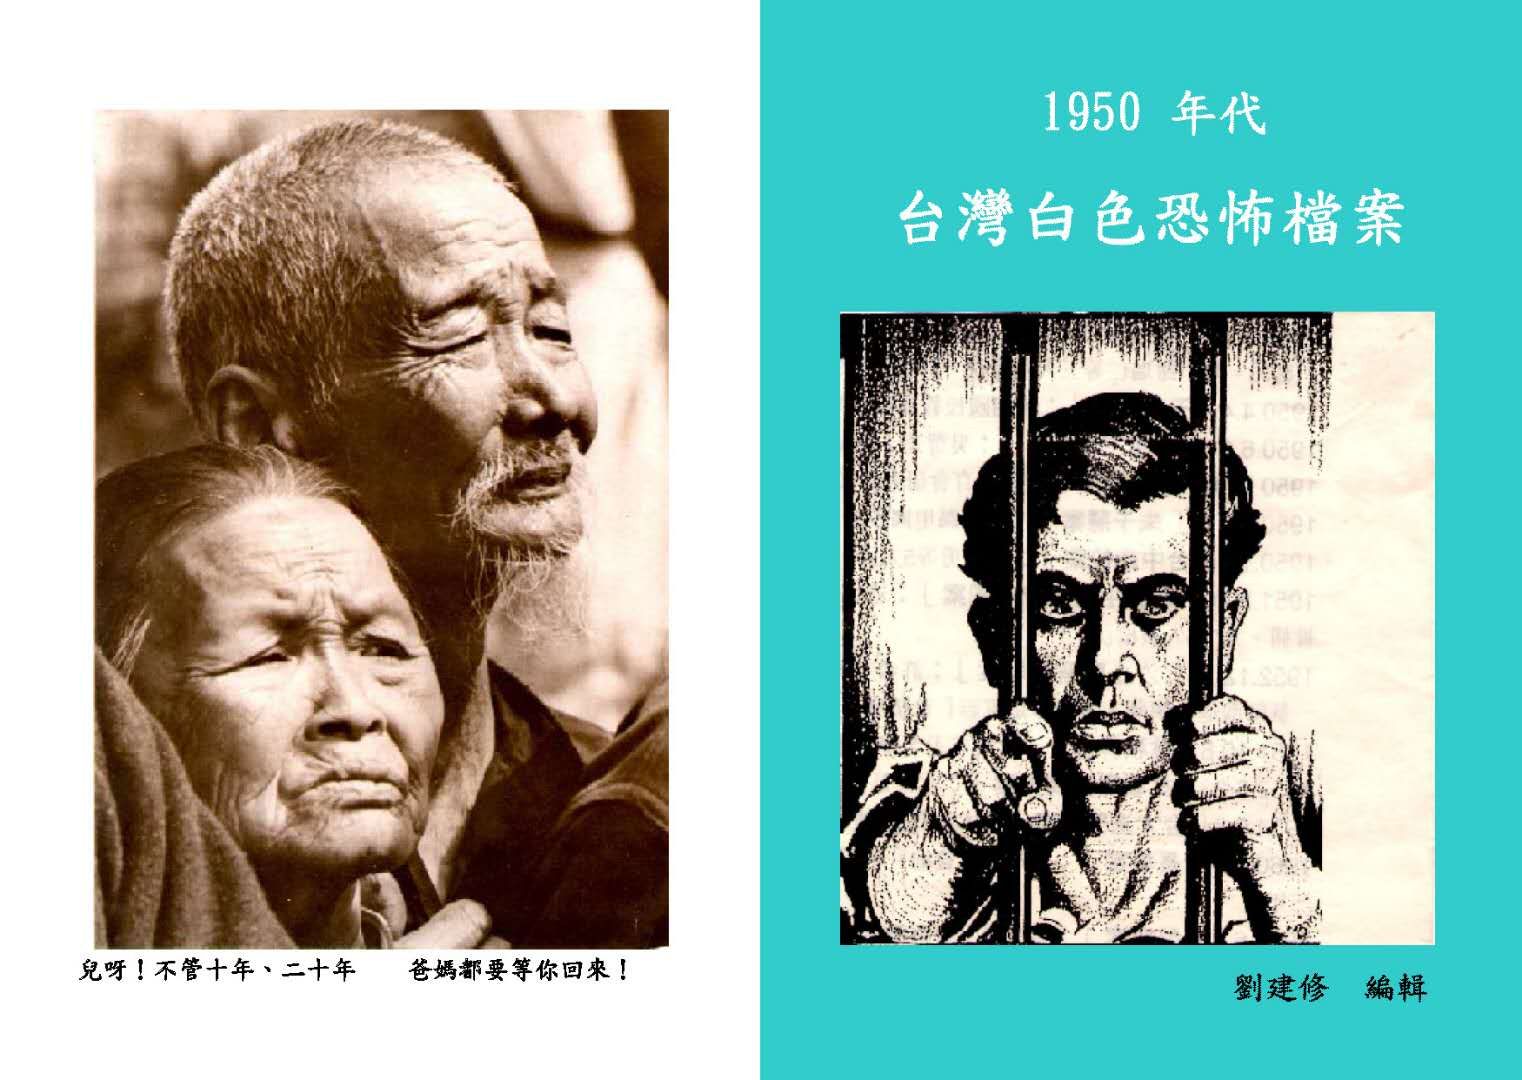 劉建修編著《1950年代臺灣白色恐怖檔案》（自行出版）一書的封面